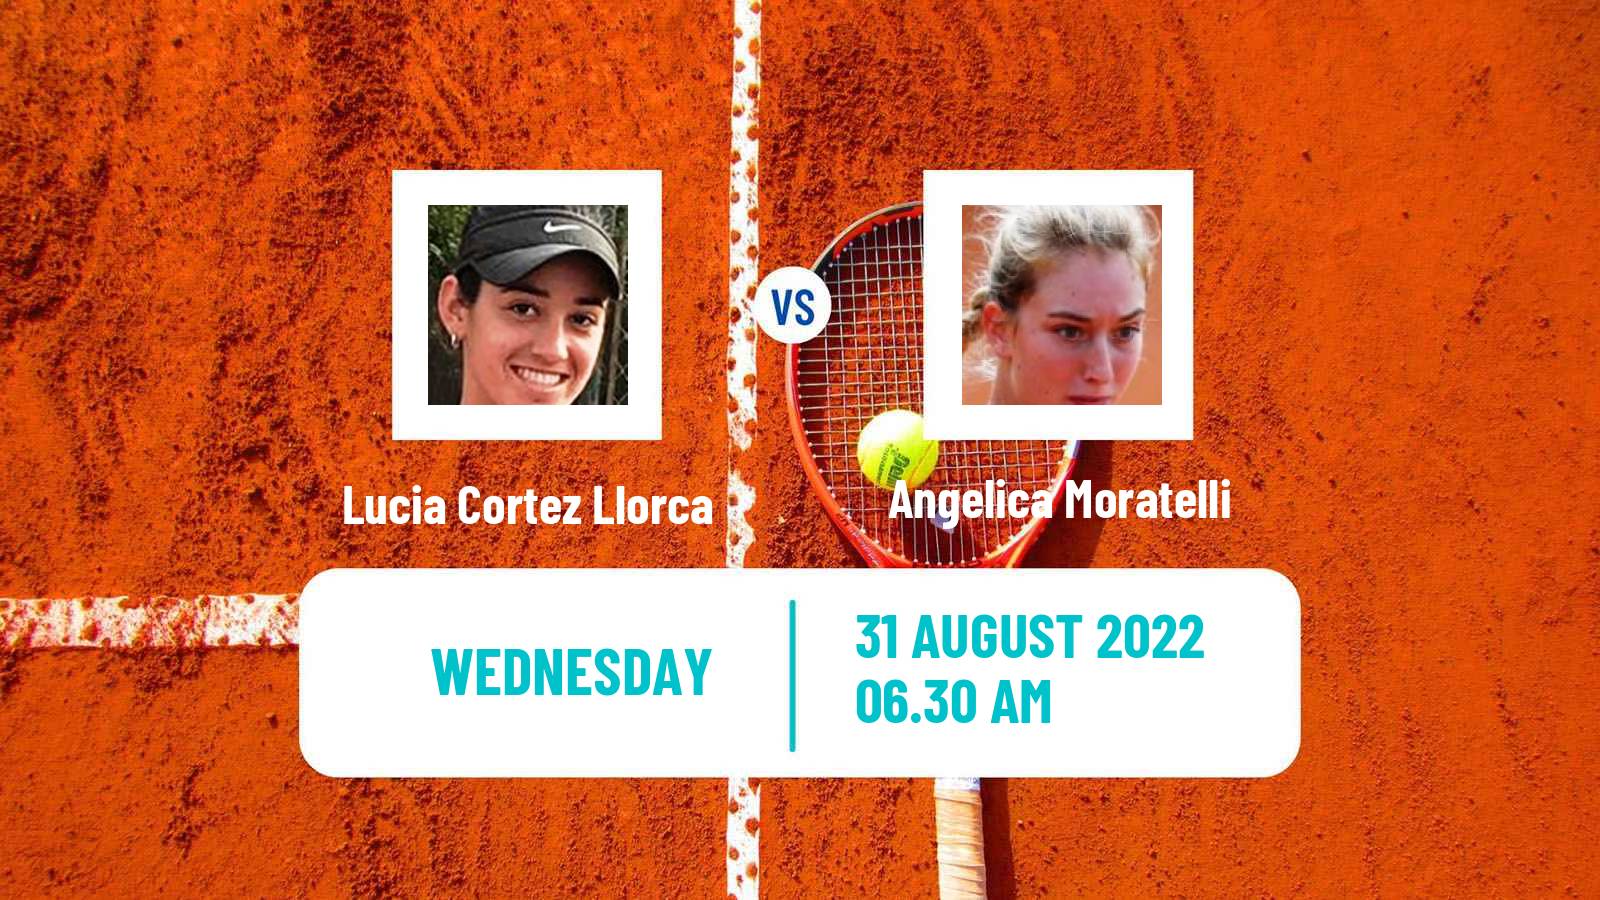 Tennis ITF Tournaments Lucia Cortez Llorca - Angelica Moratelli